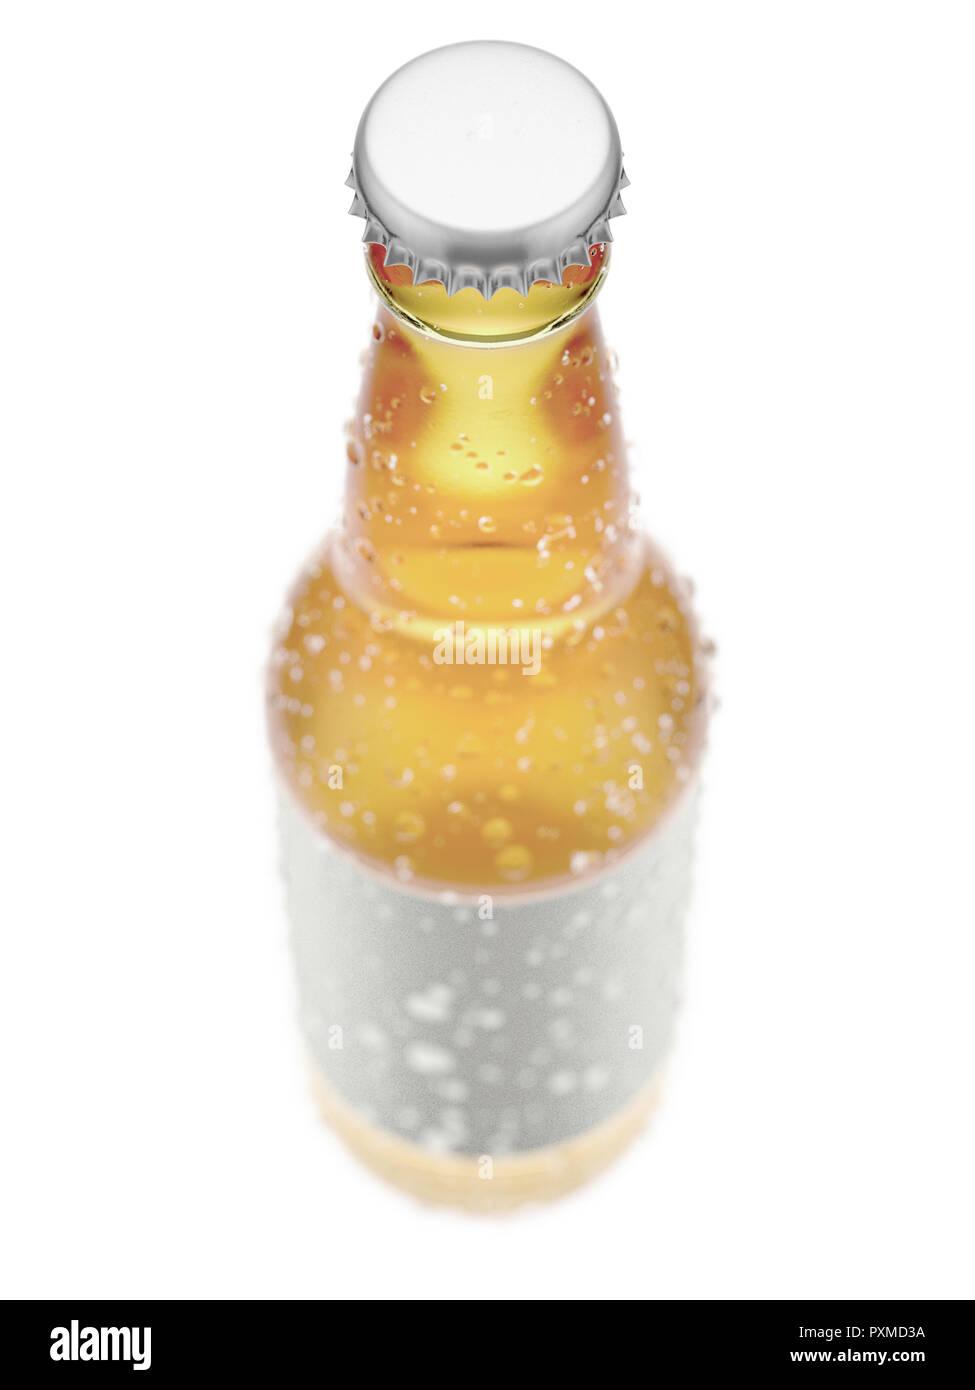 Ein klares Glas Bier oder Apfelwein Flasche mit ein leeres Etikett und Kondensation Tropfen auf einem isolierten weißen studio Hintergrund - 3D-Rendering Stockfoto